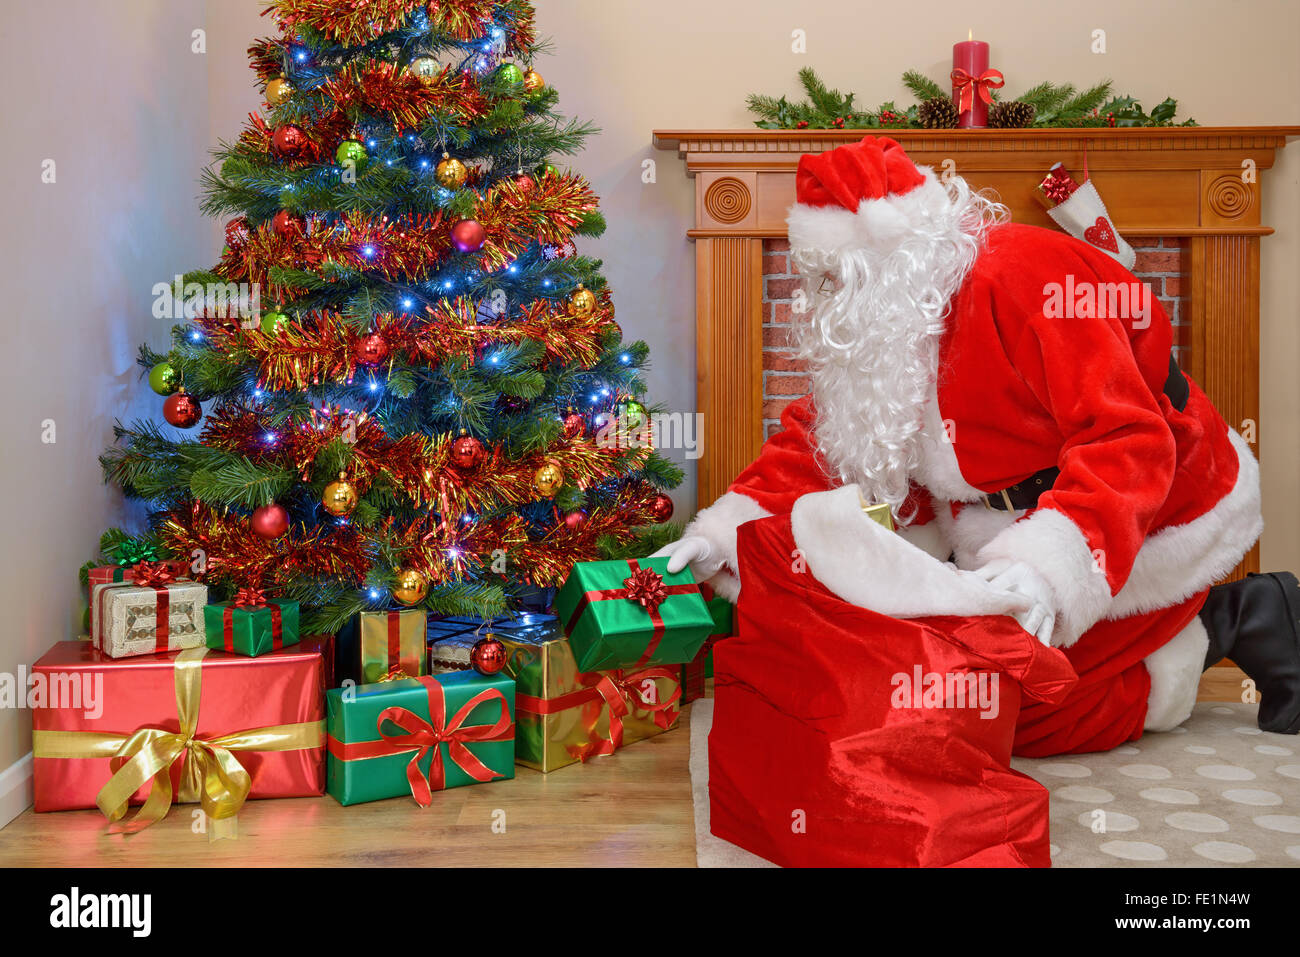 Le Père Noël offrir des cadeaux à une chambre et en tenant son sac de cadeaux Banque D'Images